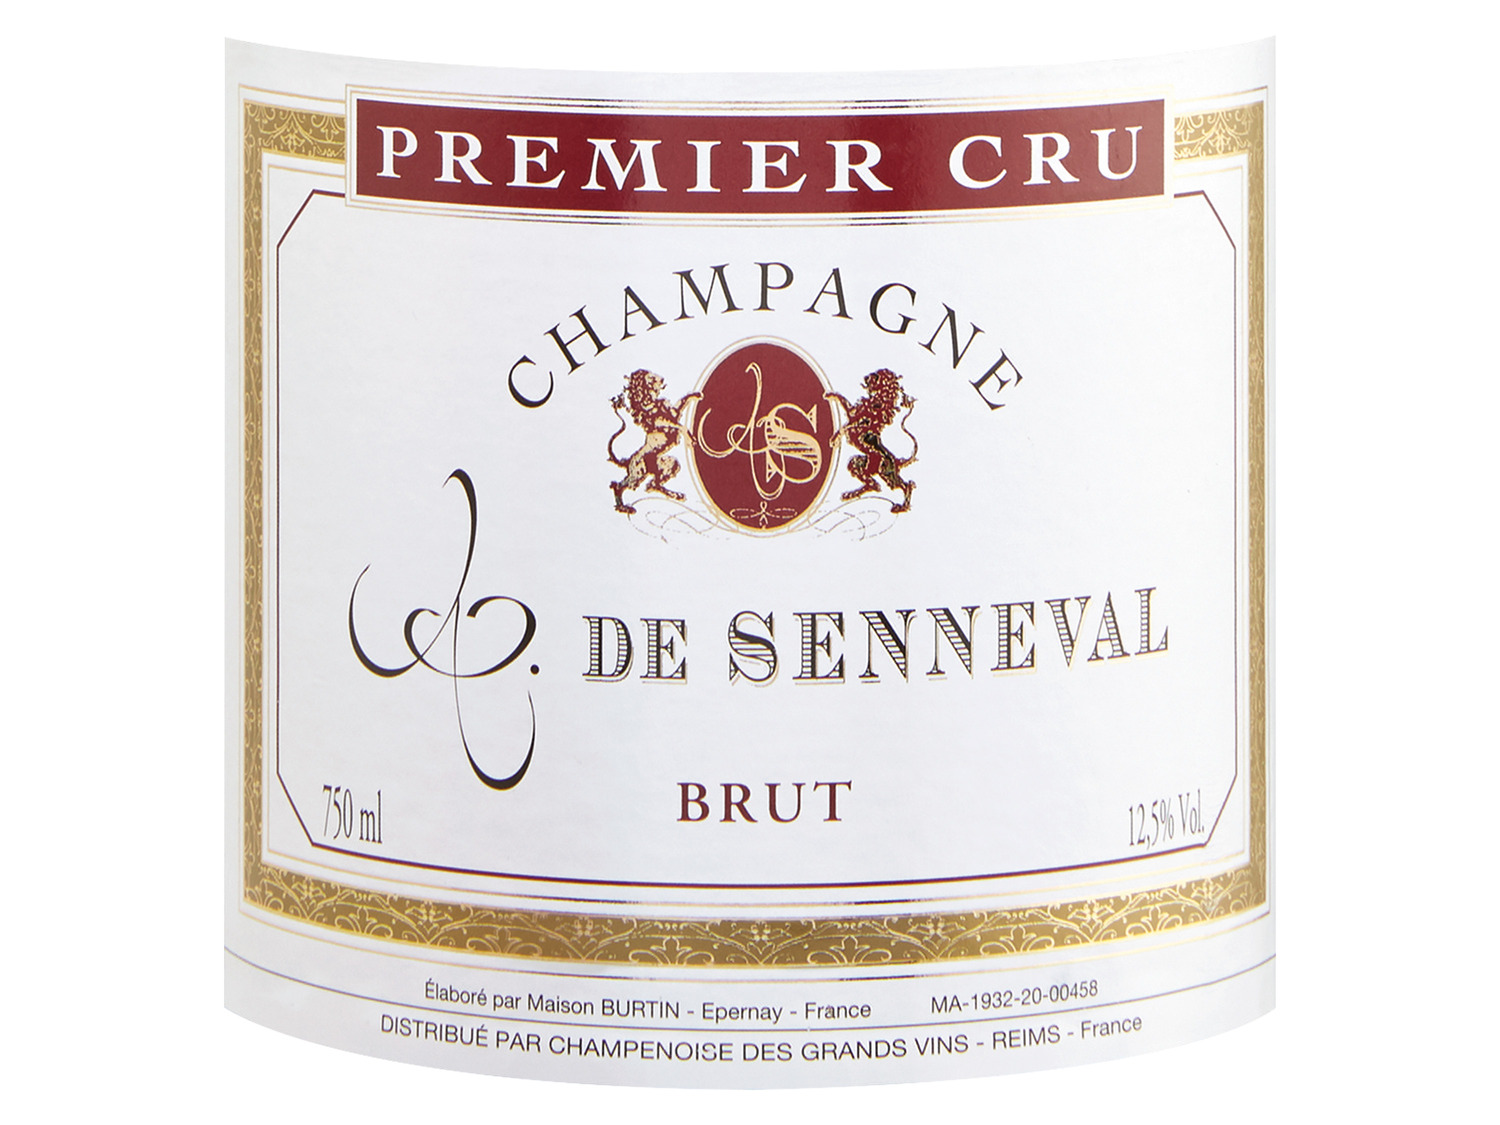 Comte de Senneval Premier Cru brut, Champagner 2011